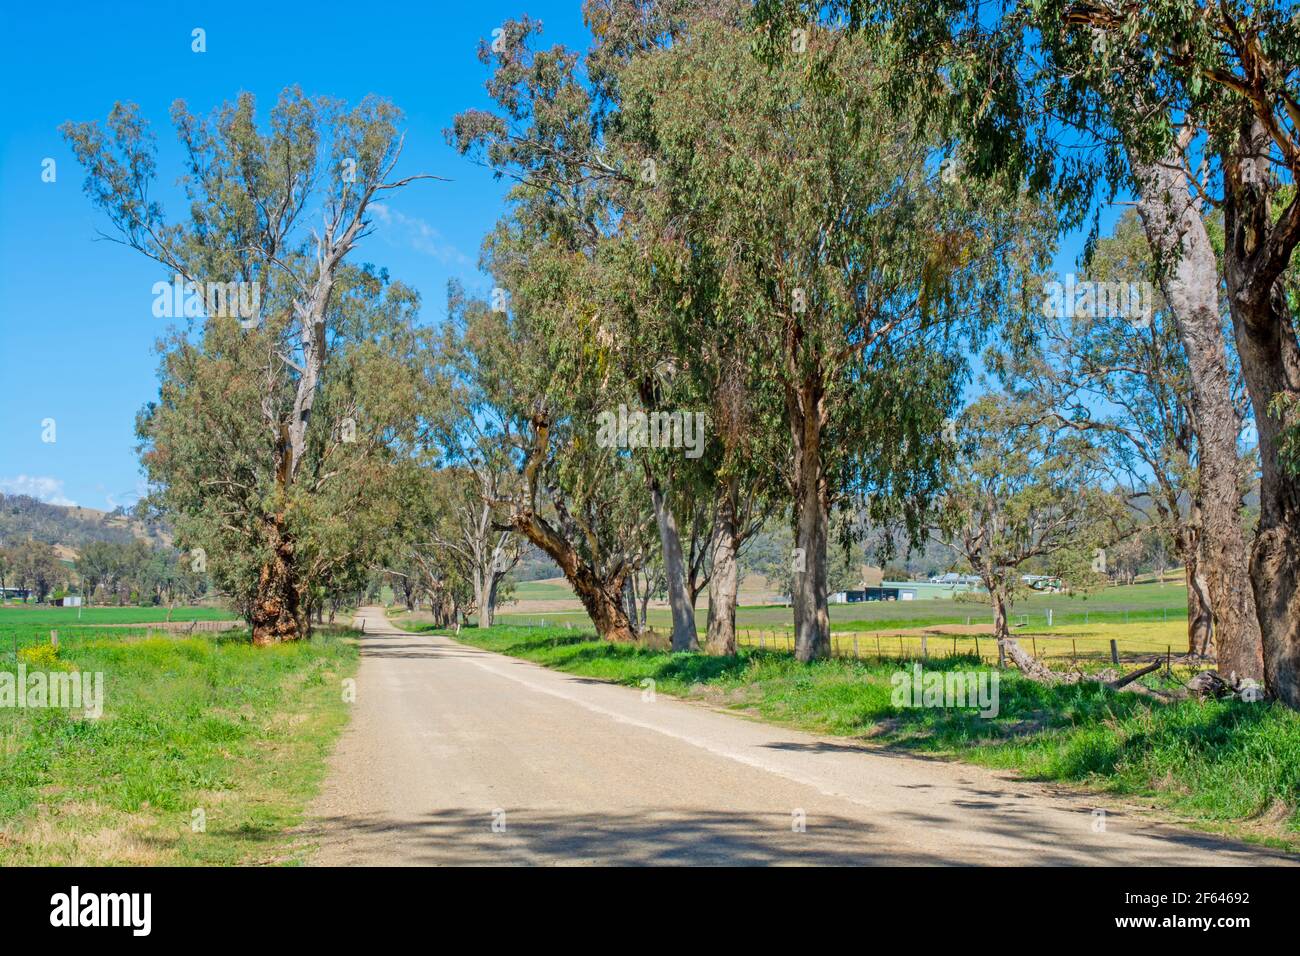 A Country Road en Nouvelle-Galles du Sud Australie. Banque D'Images